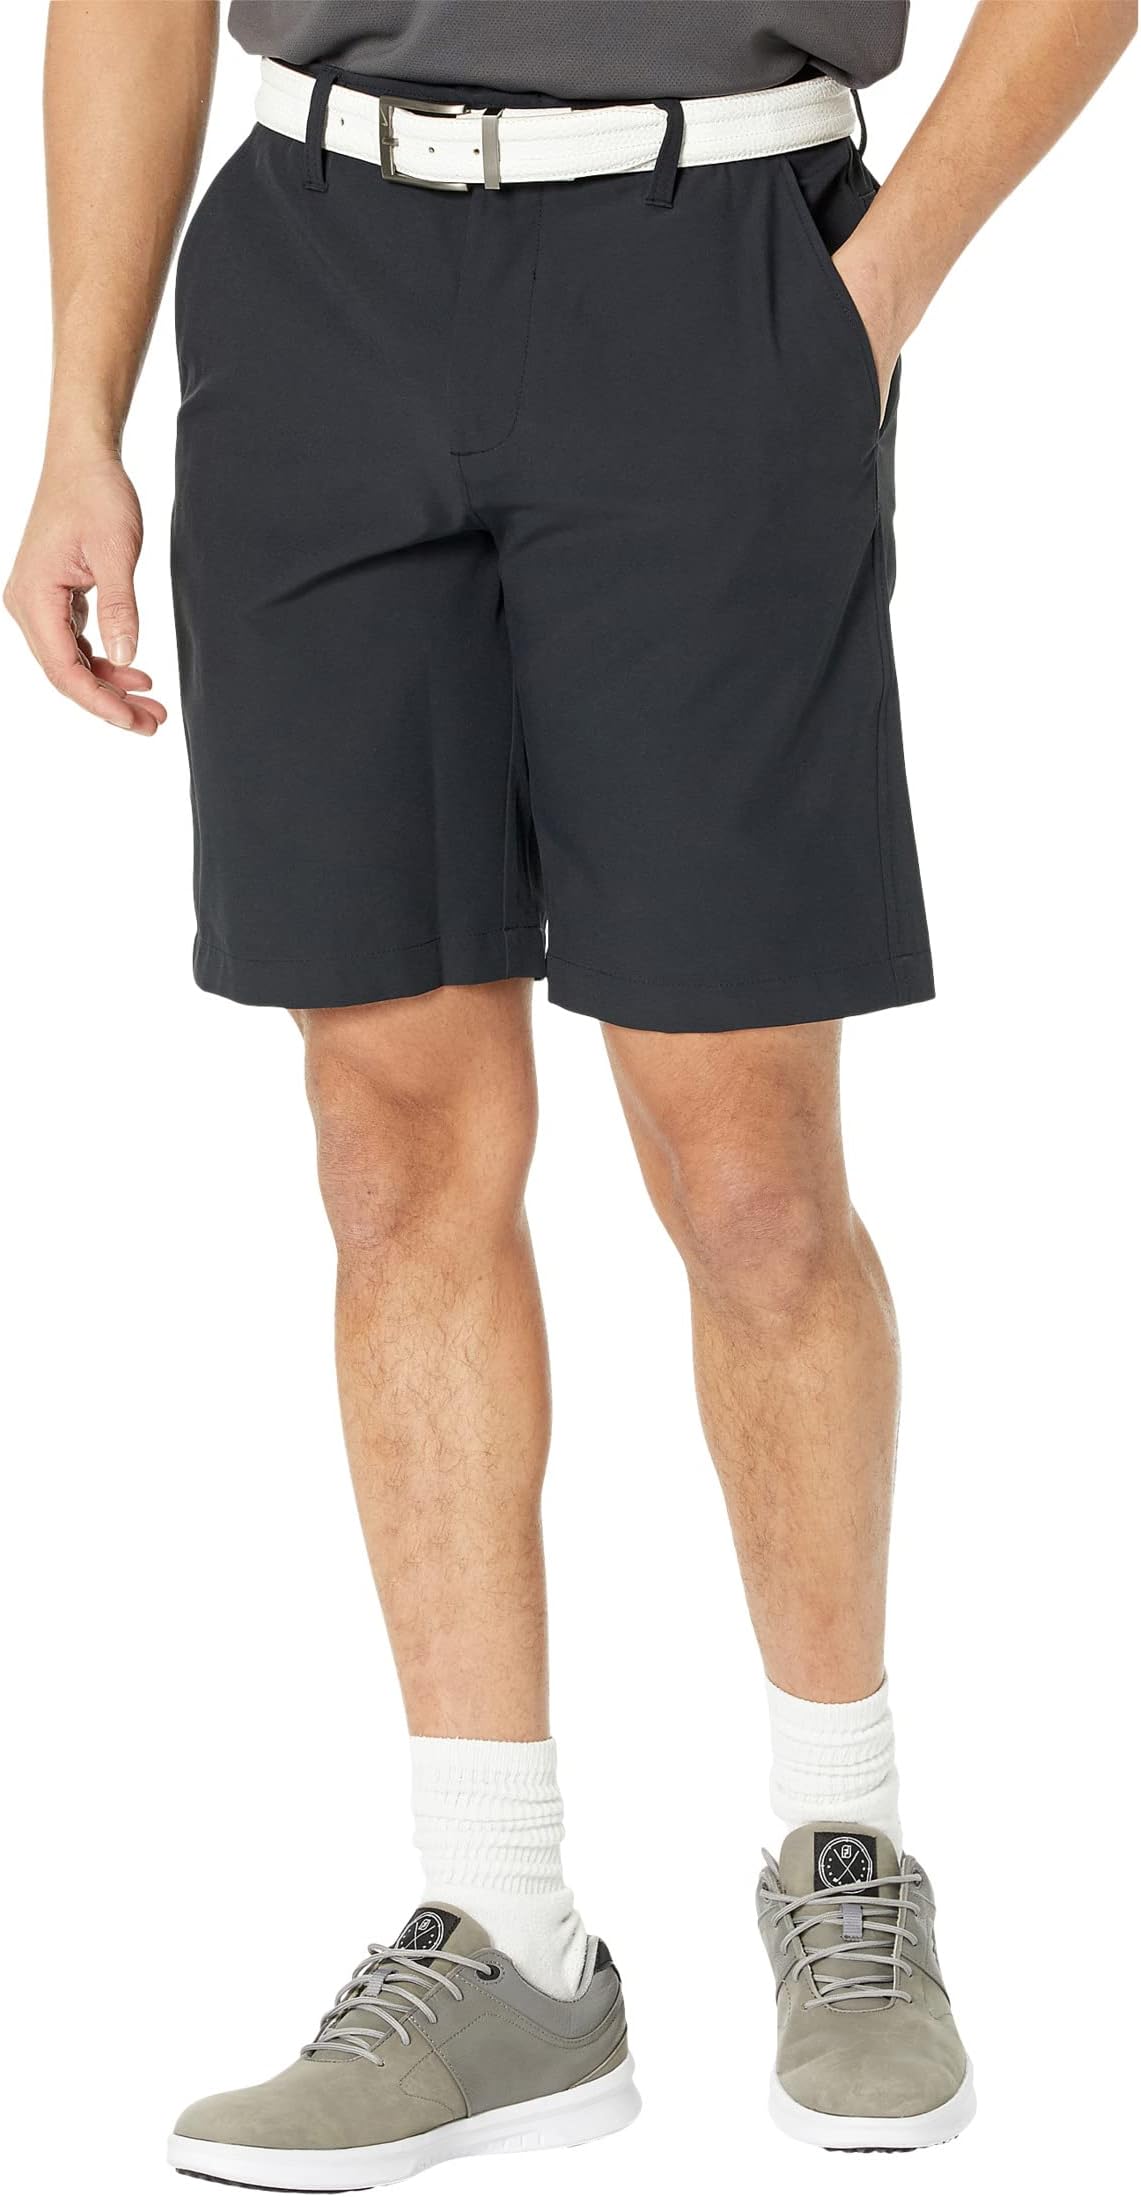 Драйв-шорты Under Armour Golf, цвет Black/Halo Gray брюки для вождения under armour golf цвет black halo gray